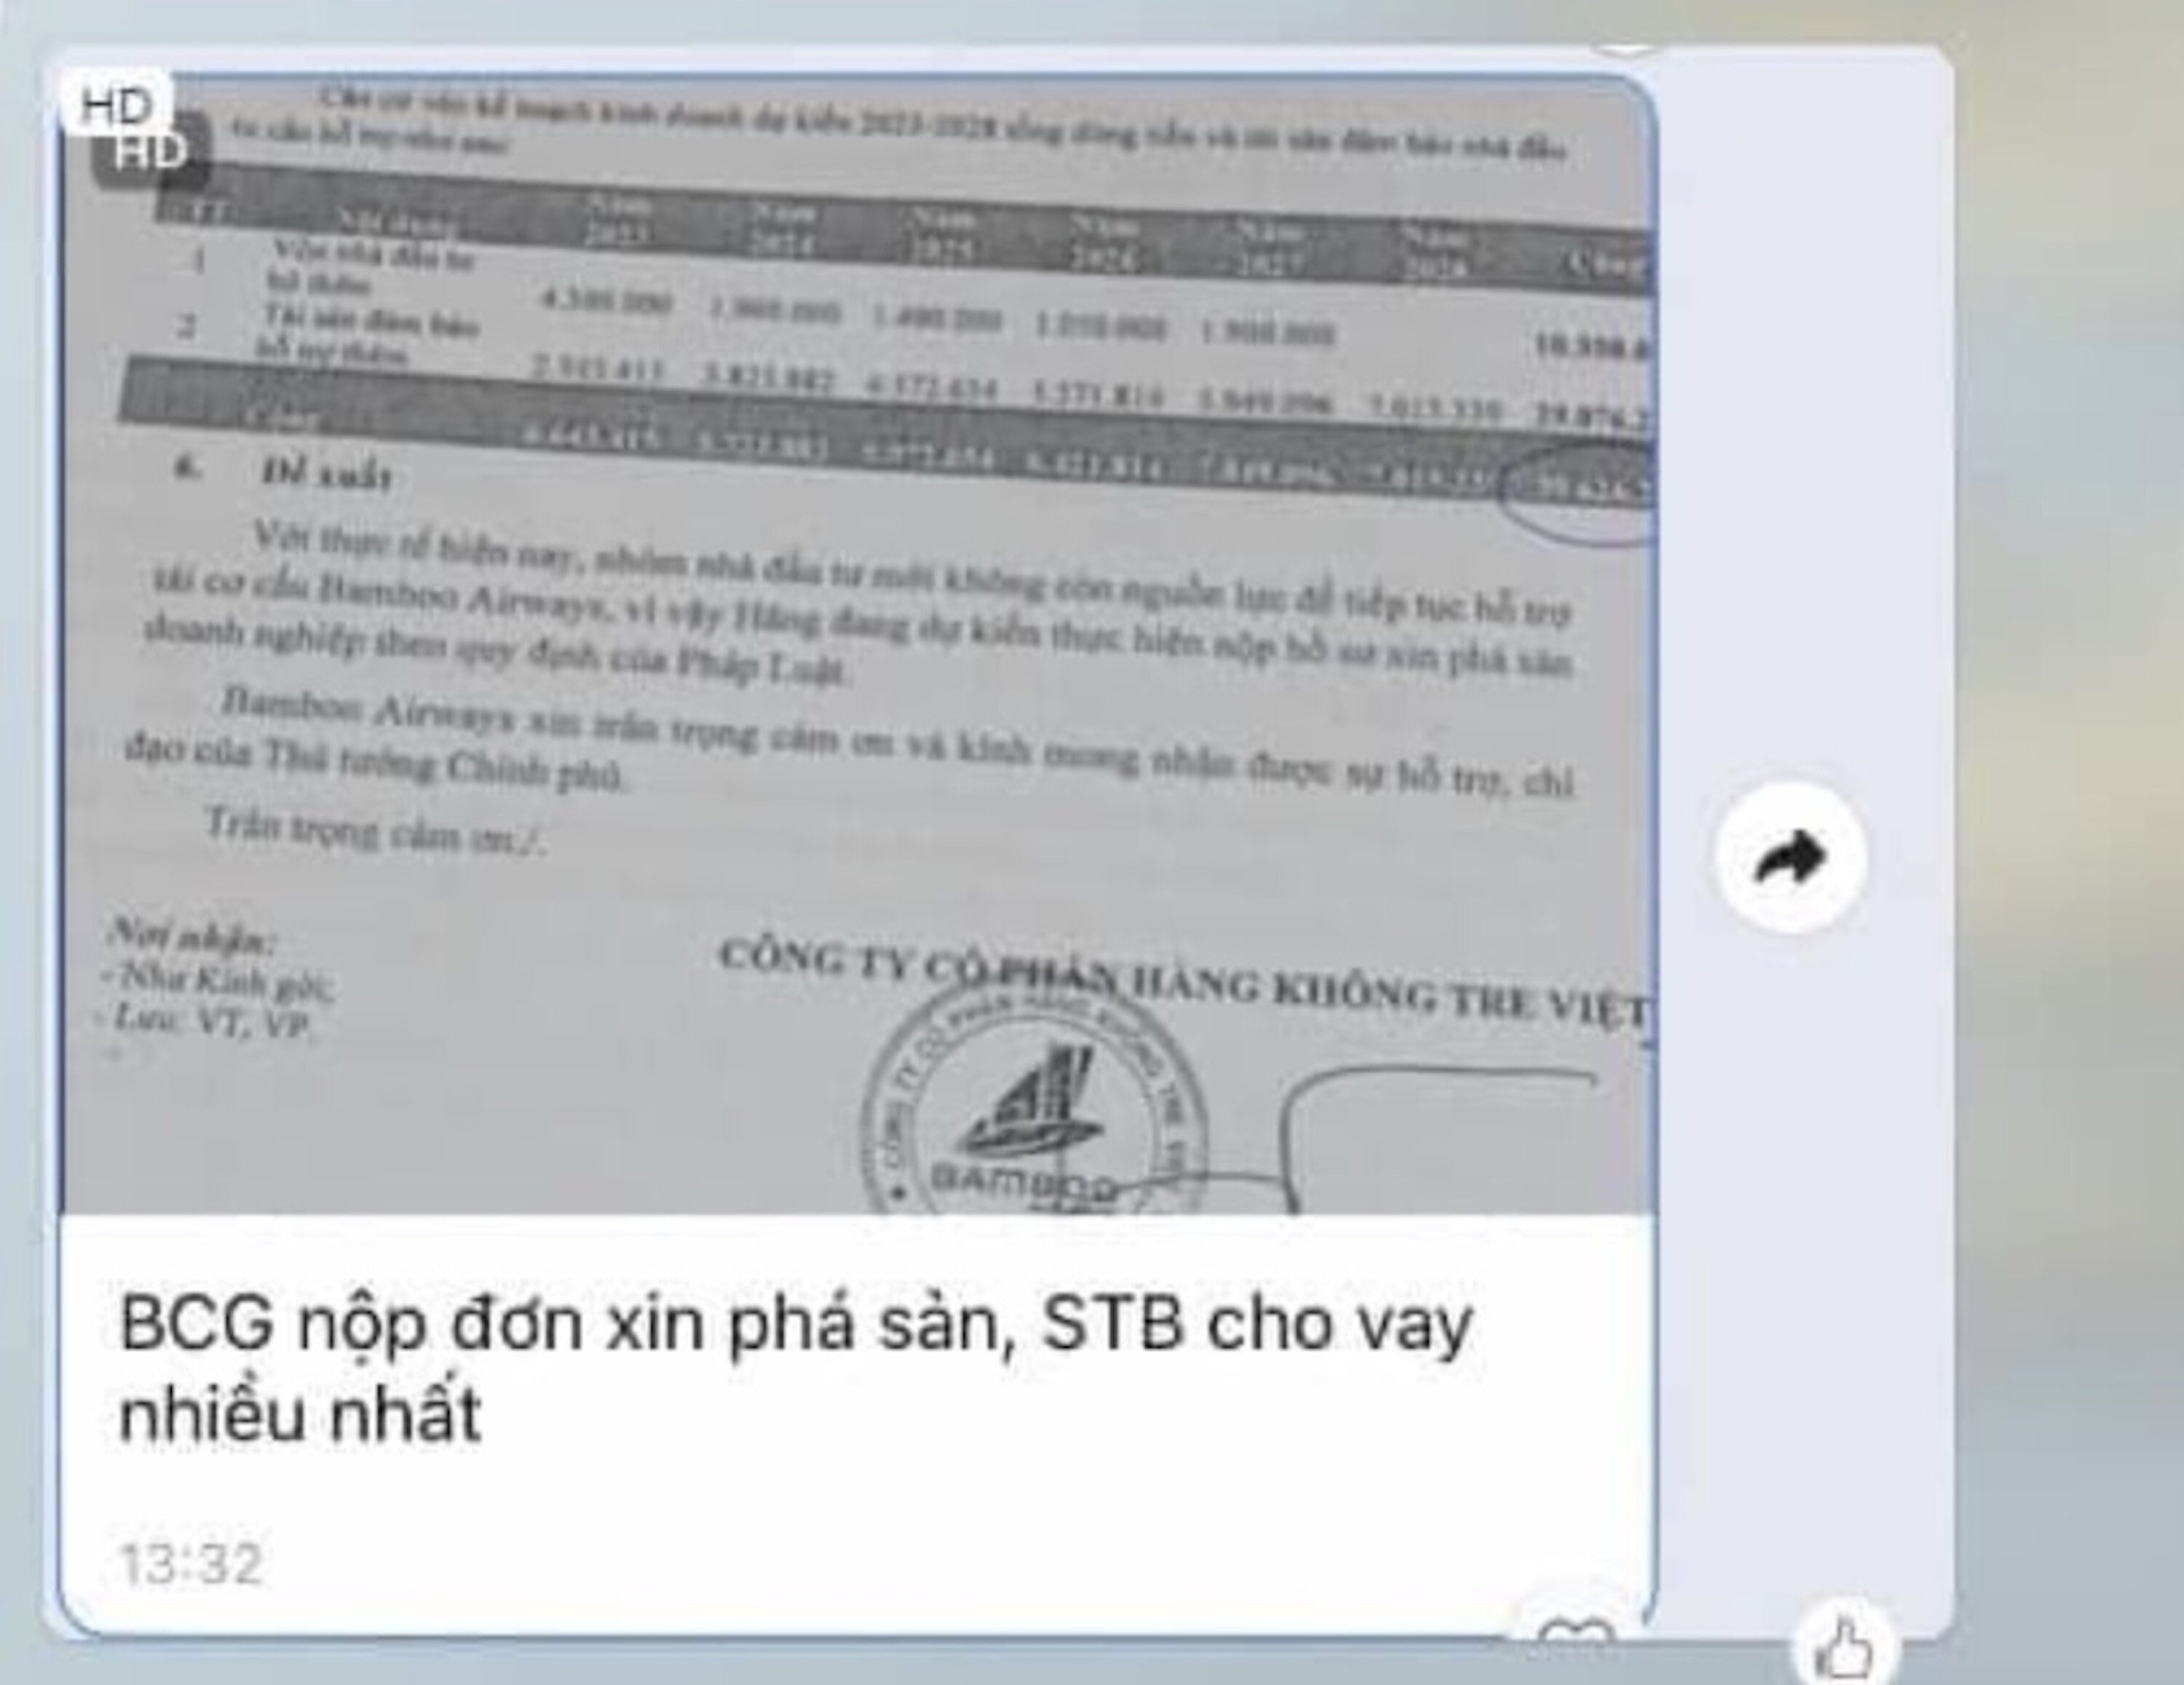 Nội dung đề xuất gây xôn xao mạng xã hội chiều nay về tin đồn Bamboo Airways xin phá sản. (Ảnh chụp màn hình)